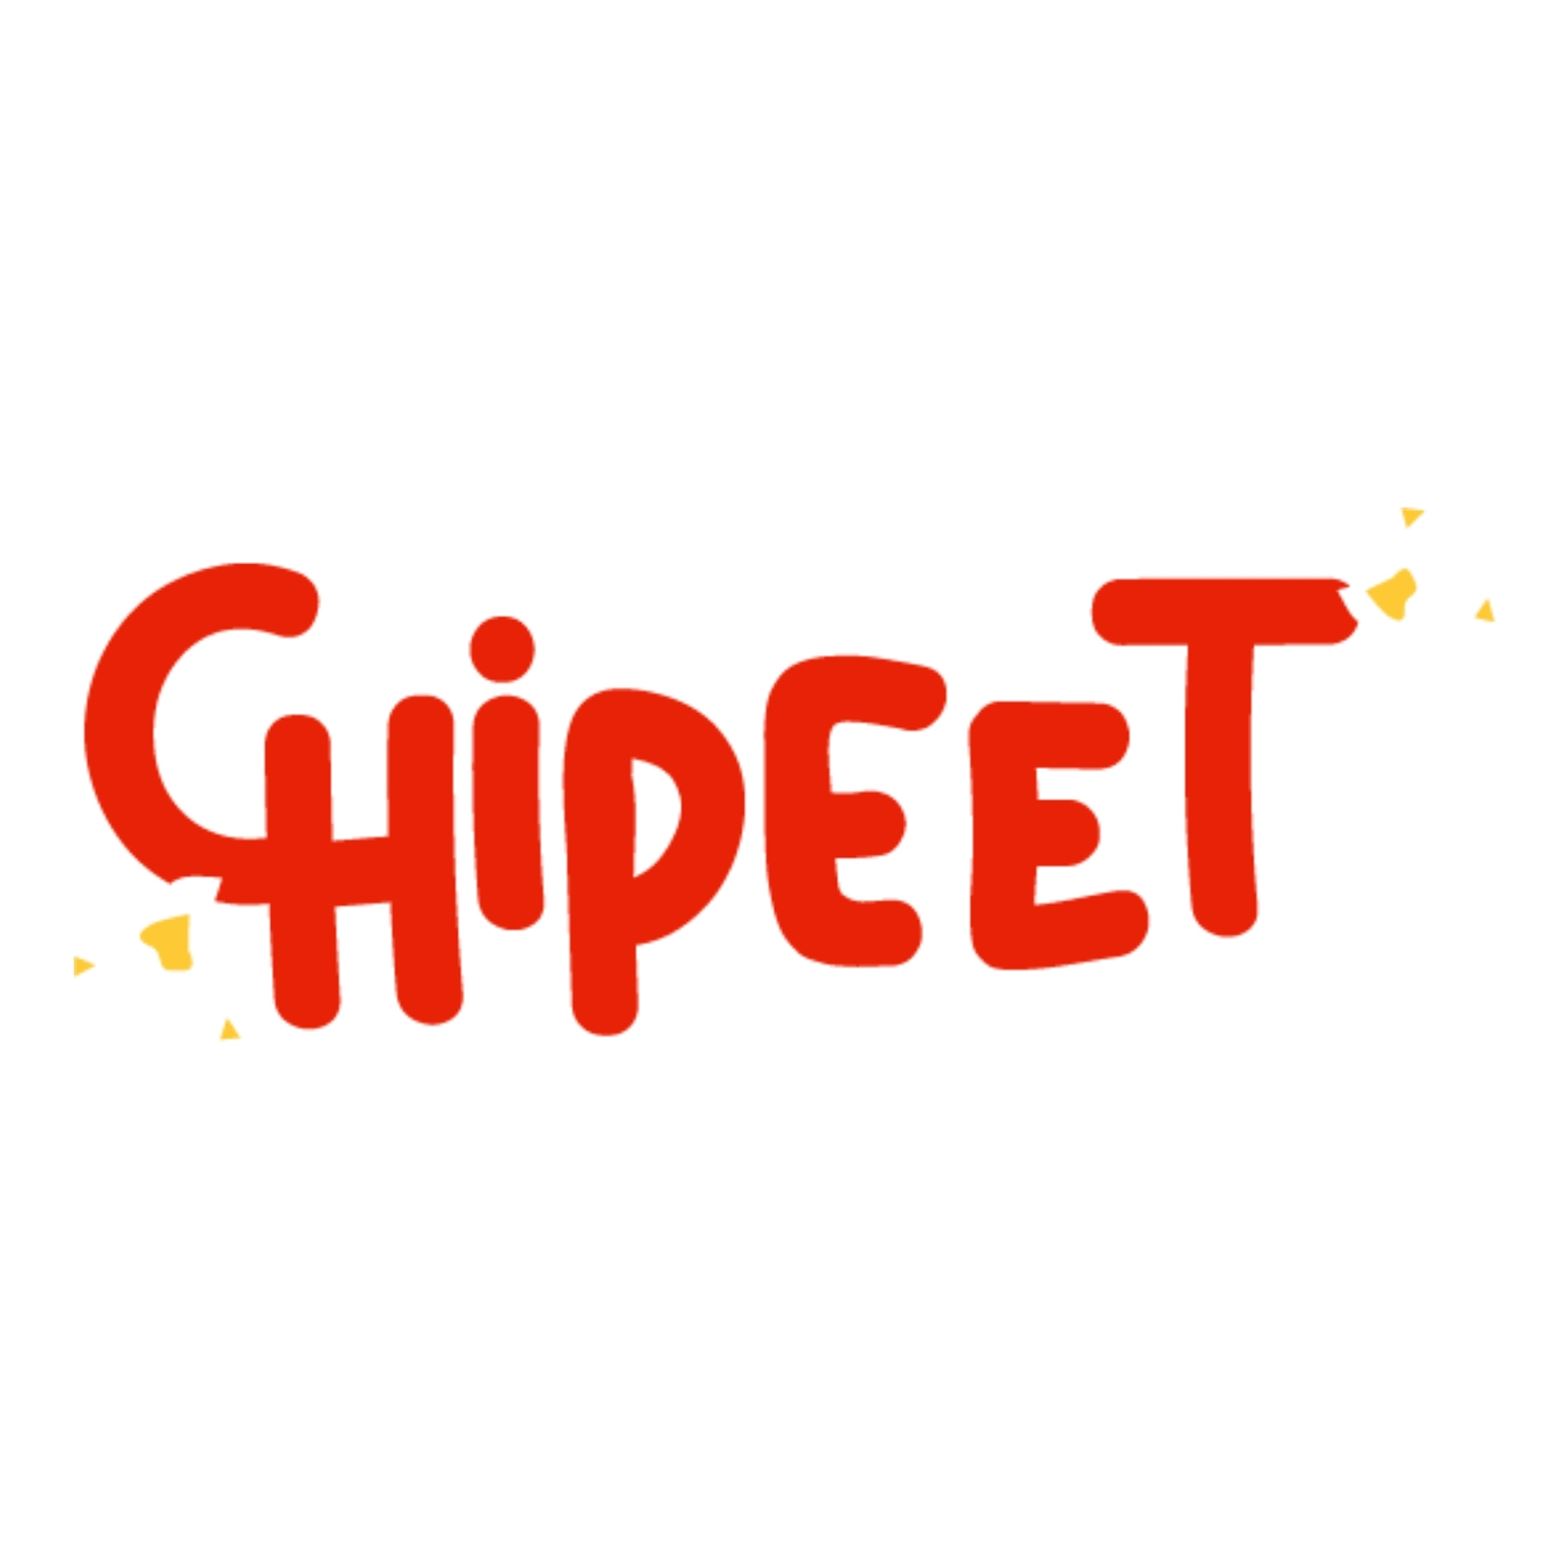 Chipeet Logo